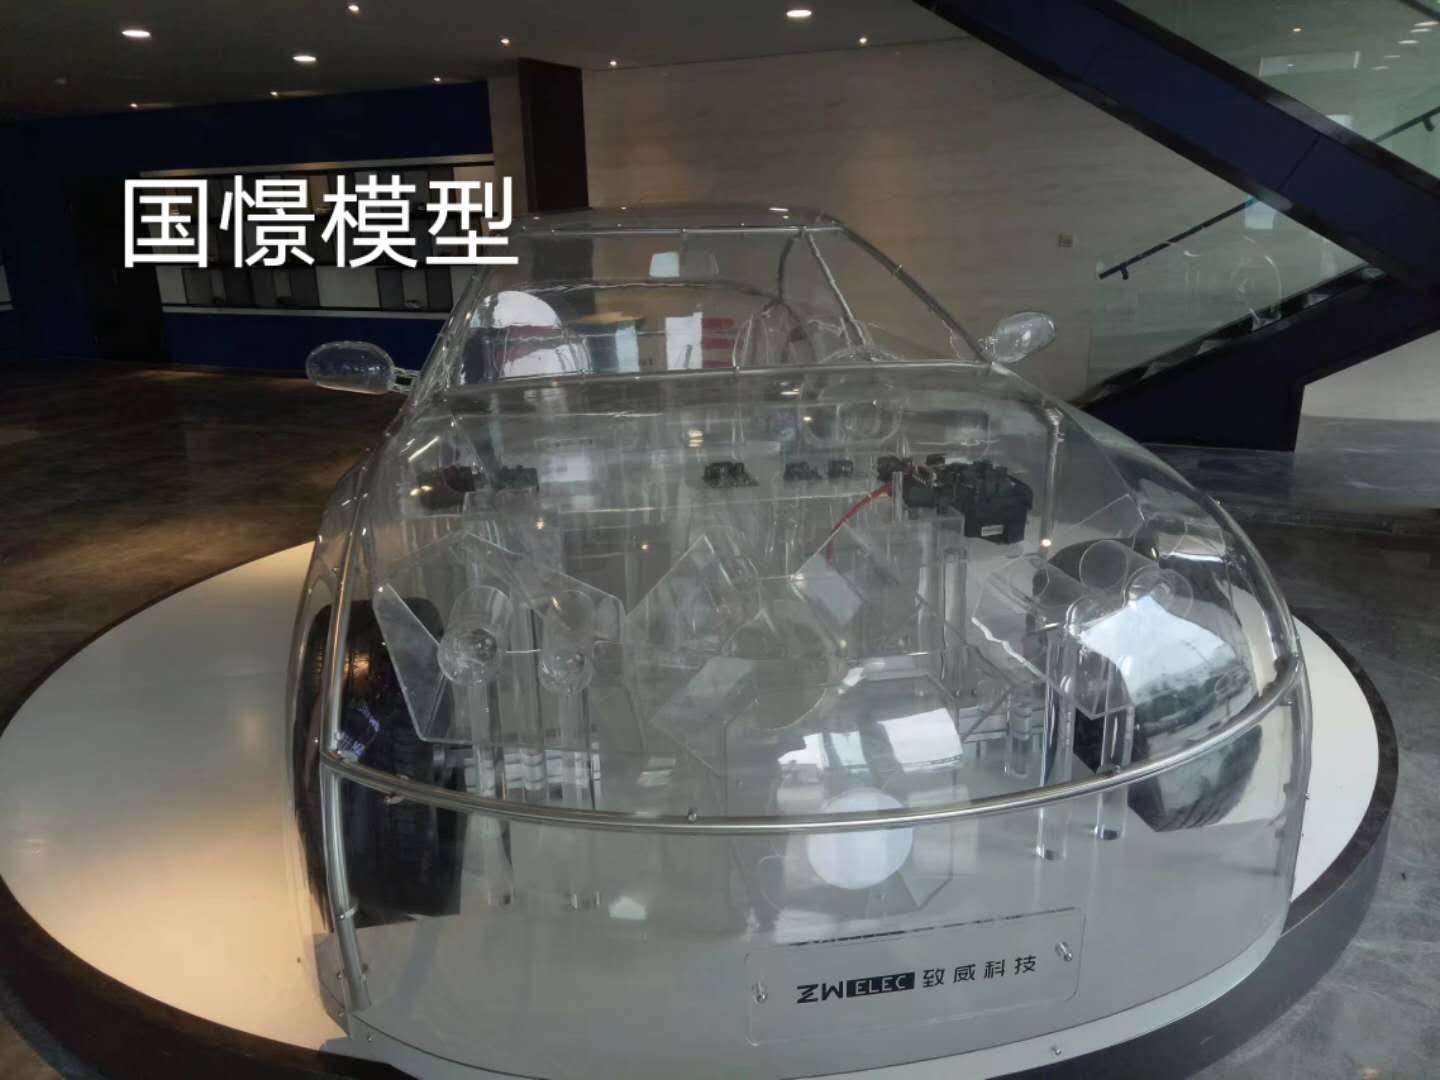 乐平县透明车模型